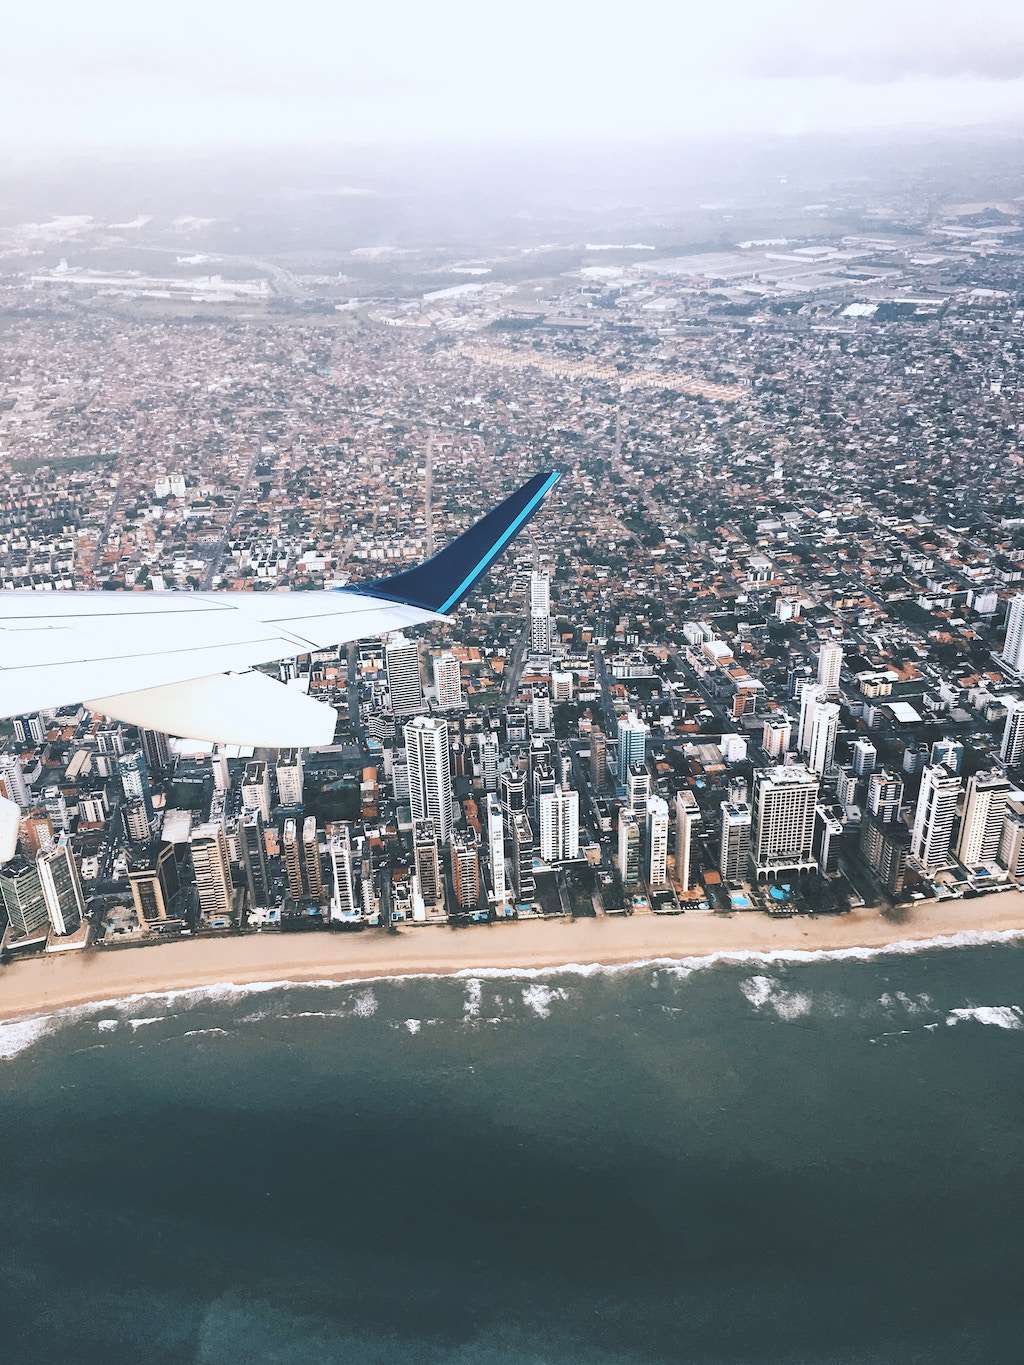 An airplane flies over Recife, Brazil.